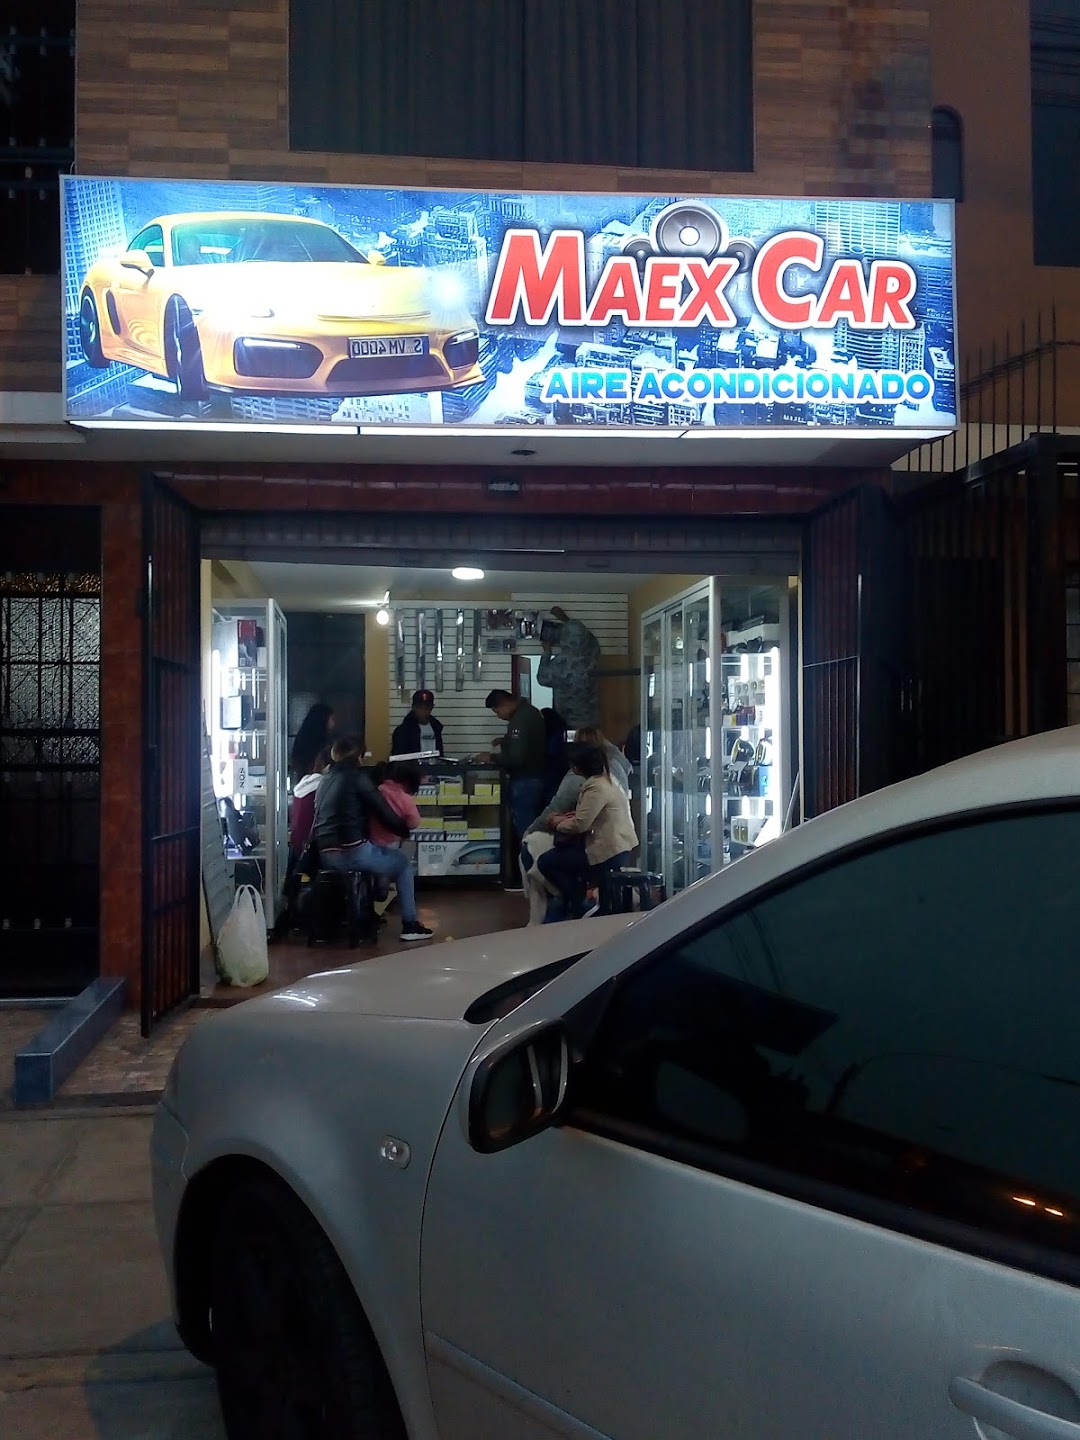 MAEX CAR